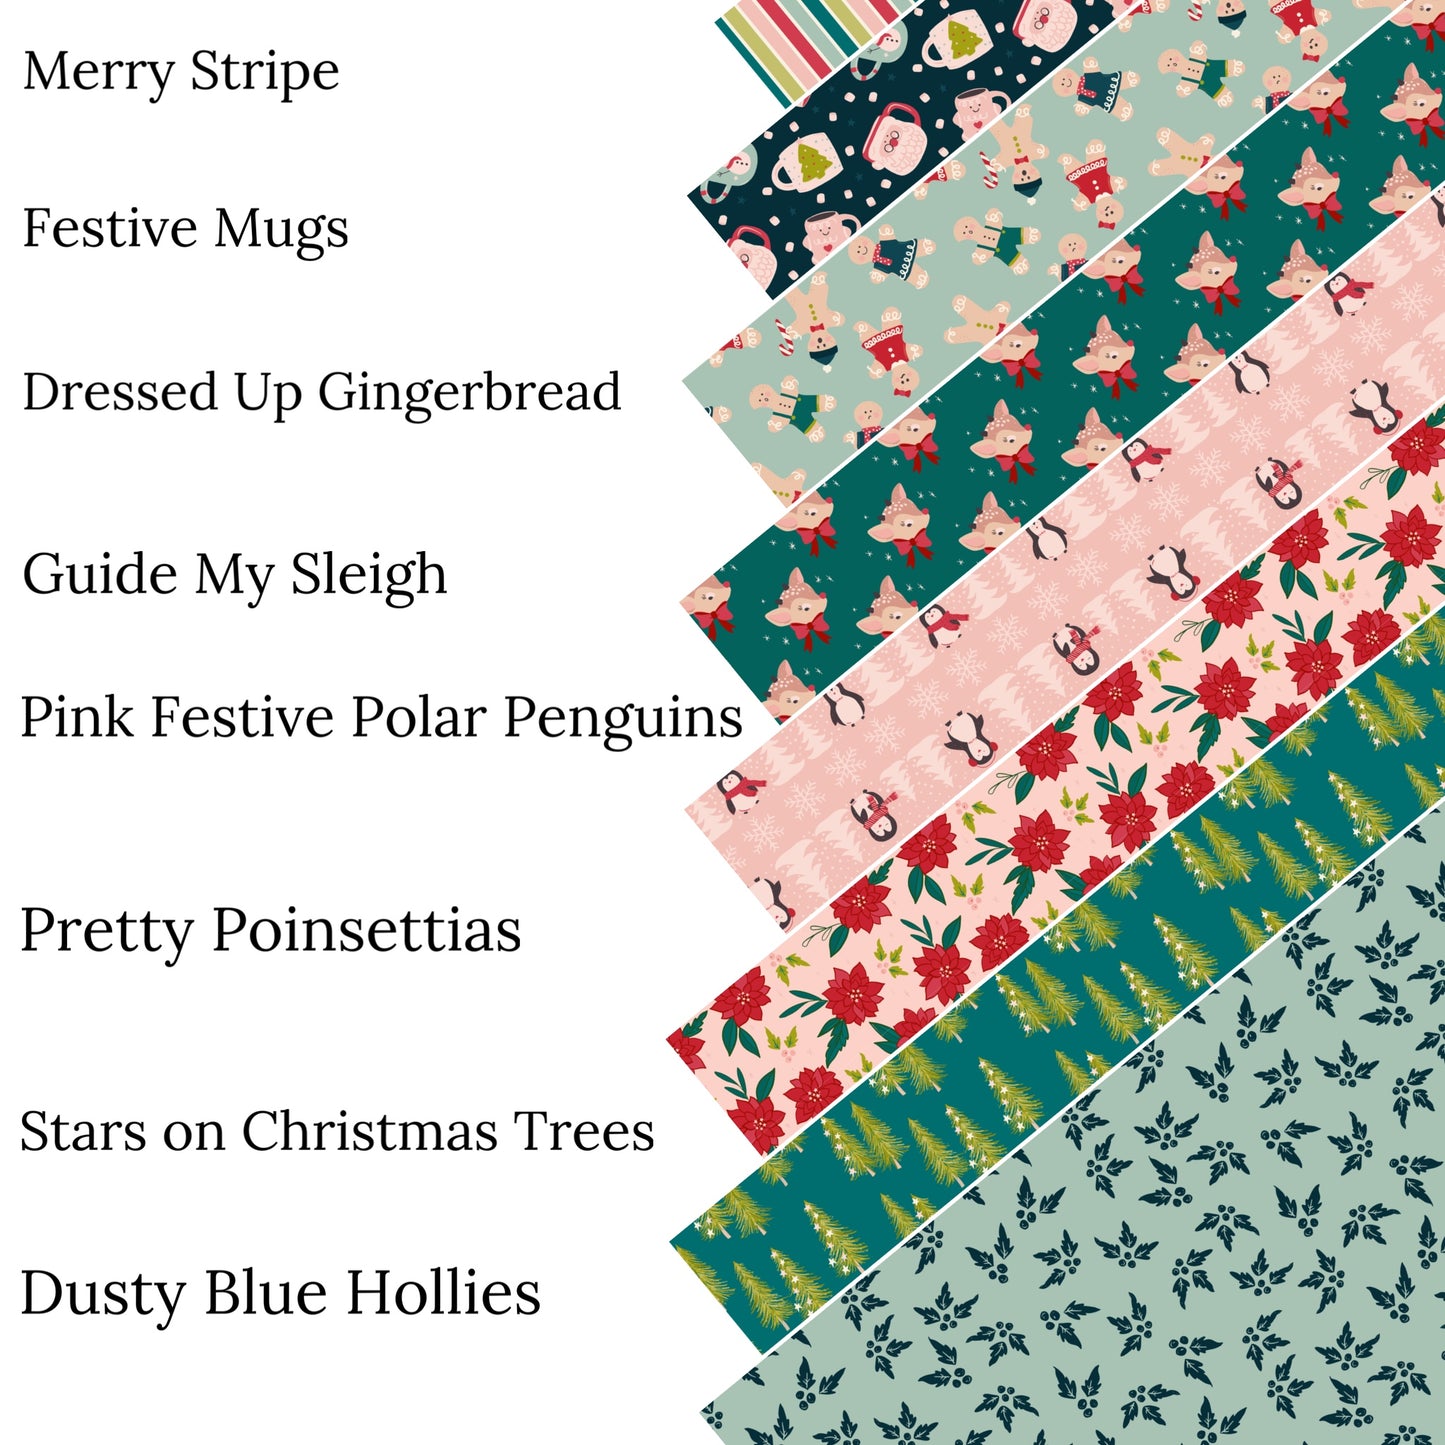 Pine Festive Polar Penguins Faux Leather Sheets